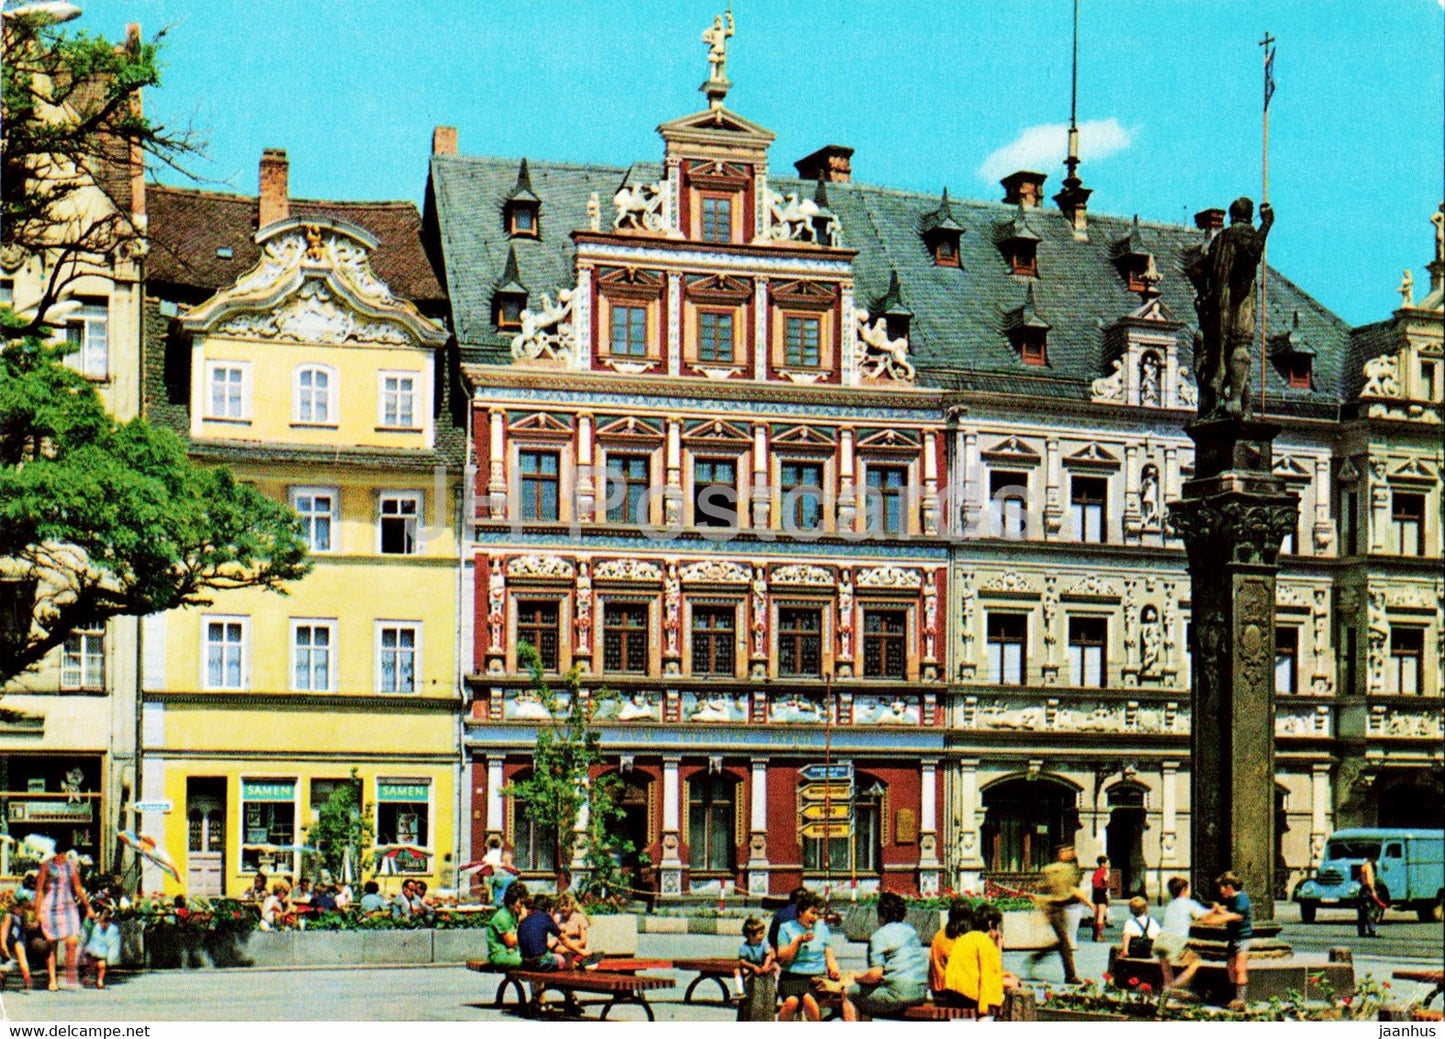 Erfurt - Fischmarkt mit Roland - Haus zum Breiten Herd und Gildehaus - Germany DDR - unused - JH Postcards